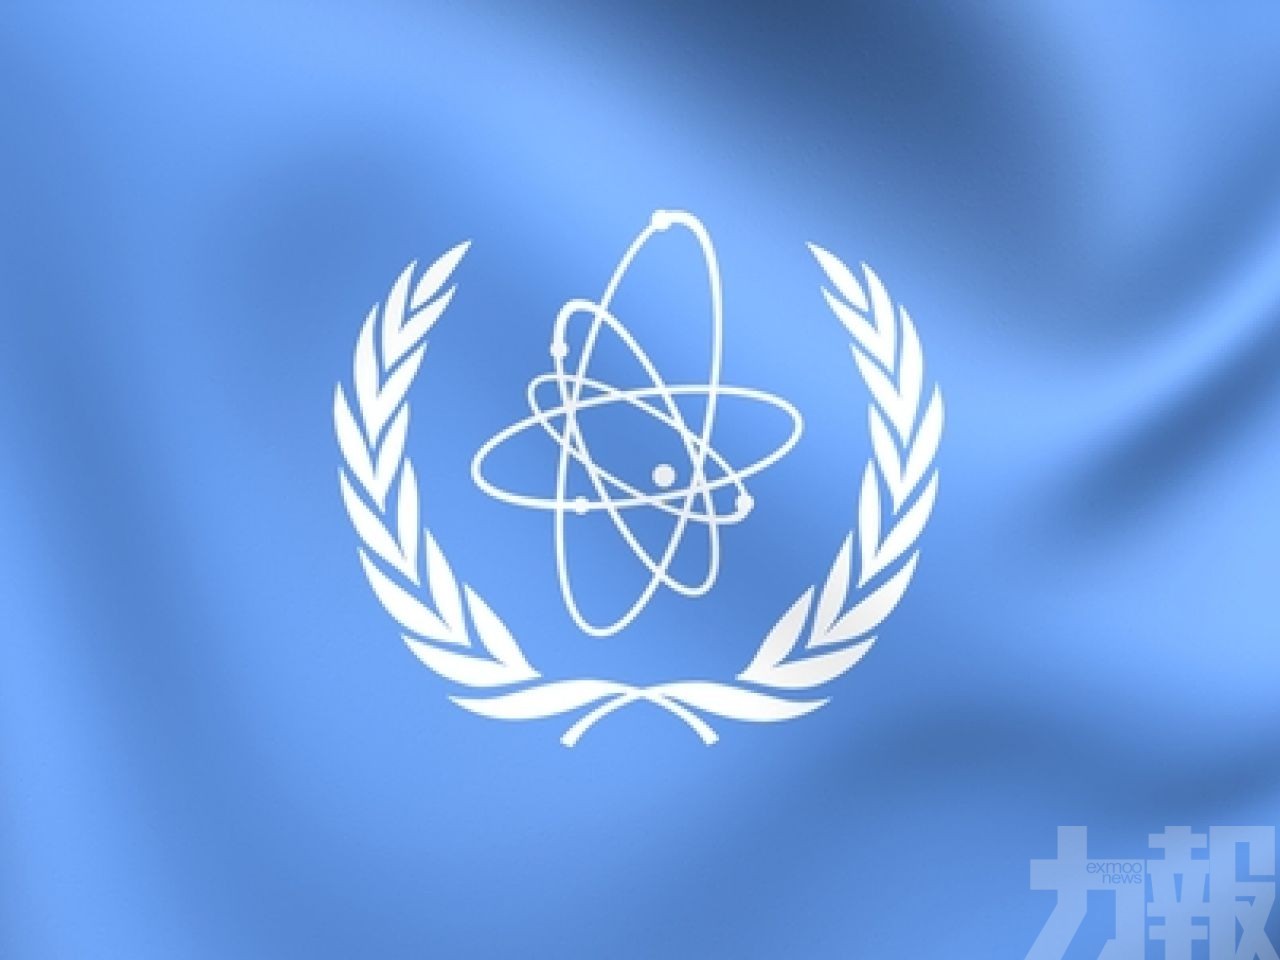 伊朗鈾濃縮度突破核協議上限